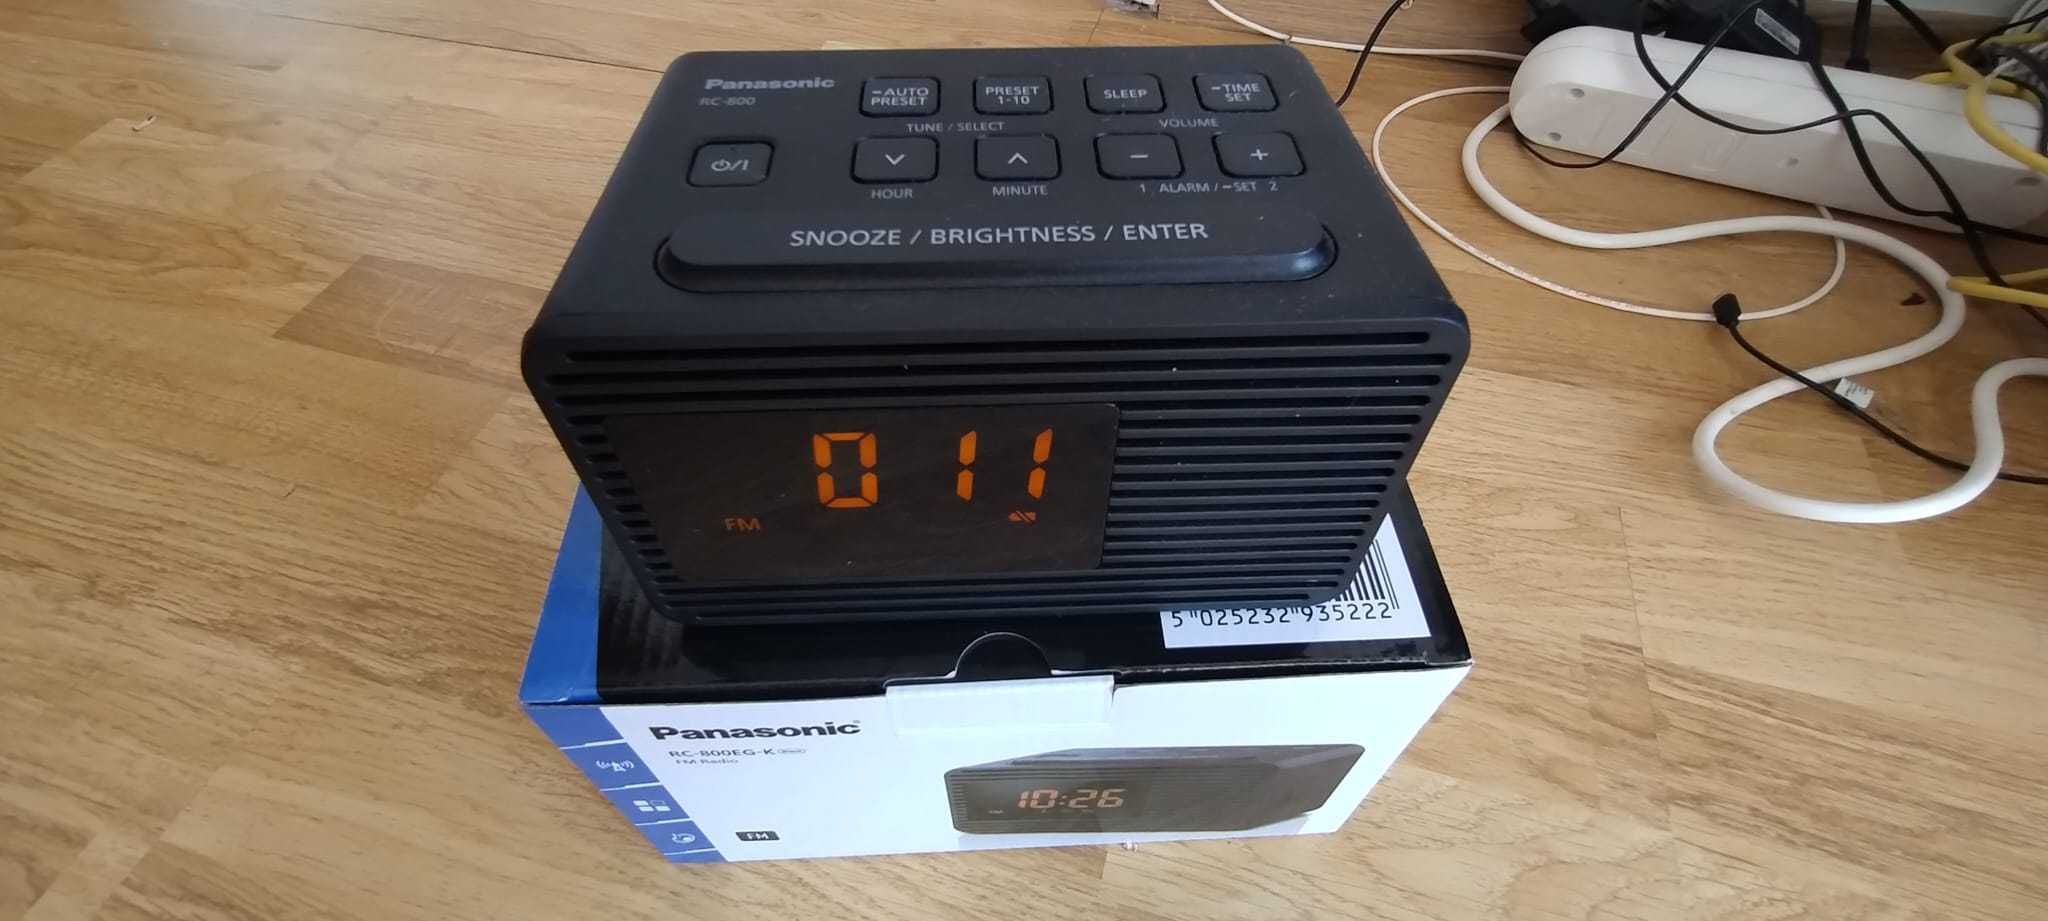 Radio Panasonic (radio, ceas, alarmă) - Link video în descriere